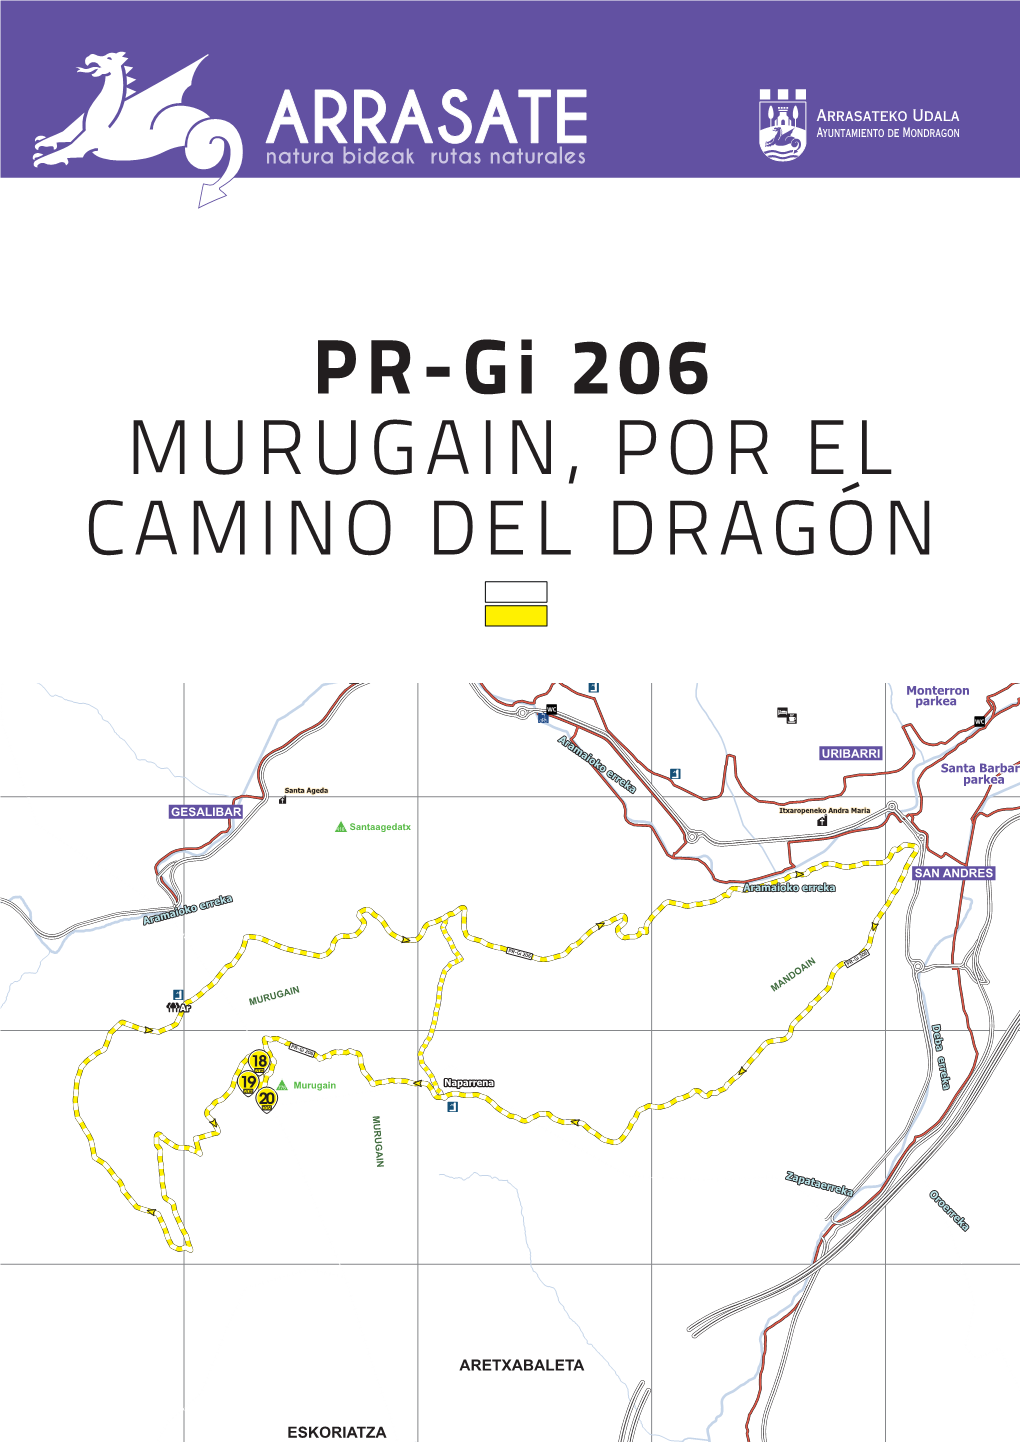 PR-Gi 206 MURUGAIN, POR EL CAMINO DEL DRAGÓN